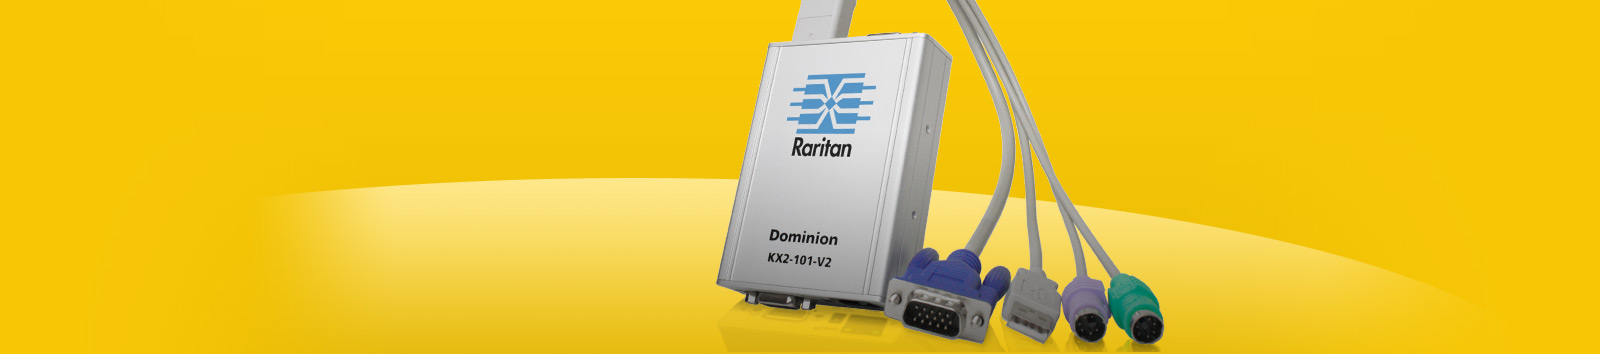 Raritan Dominion DKX2-101-V2 KVM Over IP KVM Gateway